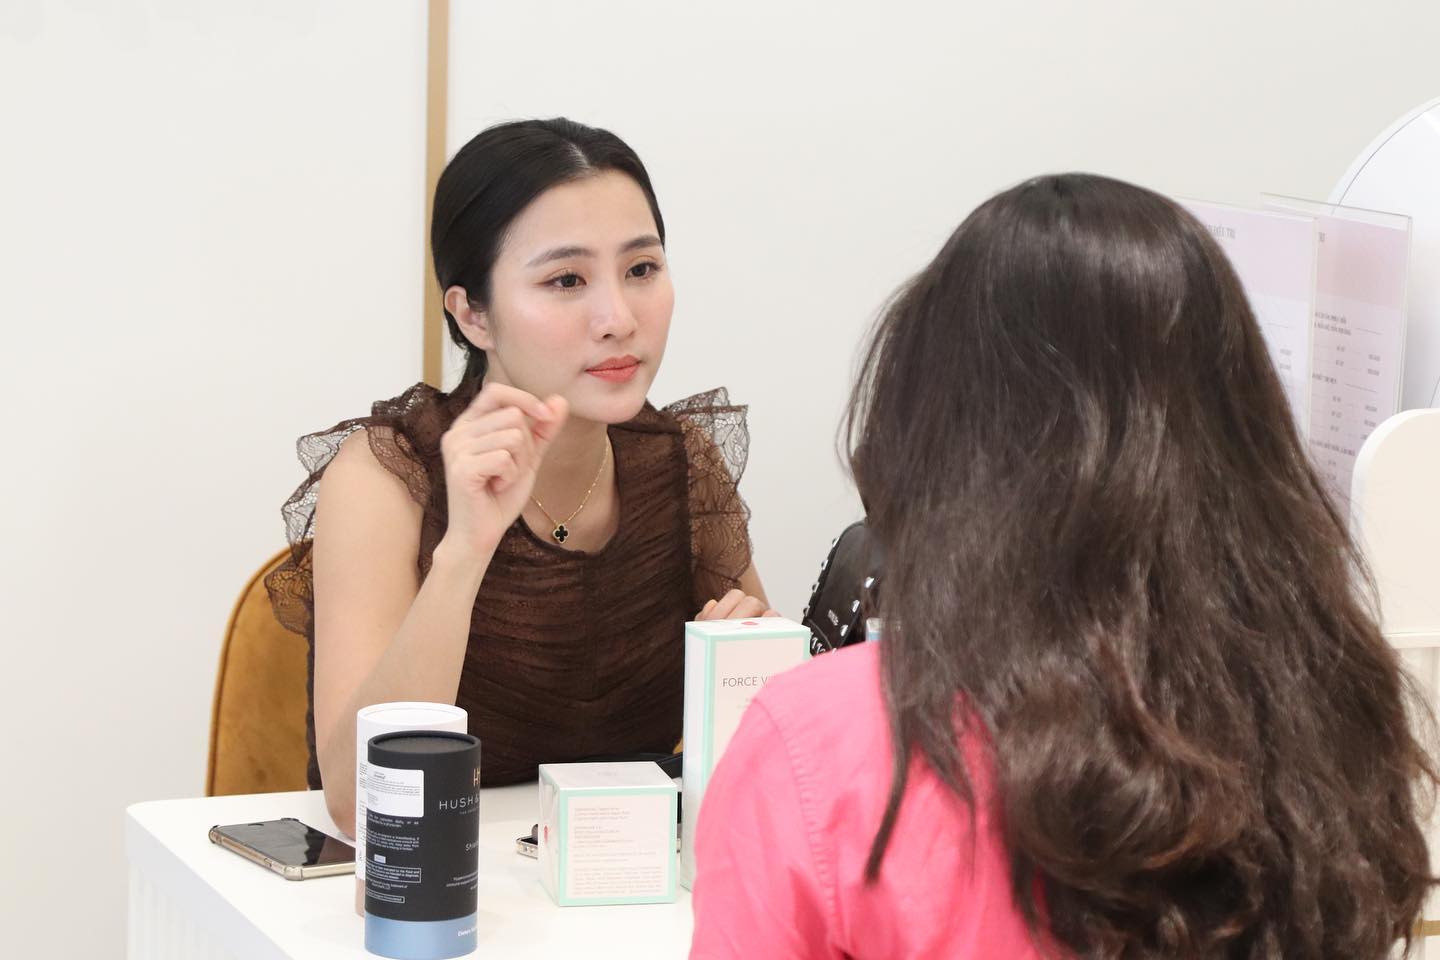 Oanh Beauty - Top spa uy tín tại TP. HCM có đa dạng dịch vụ chăm sóc sắc đẹp